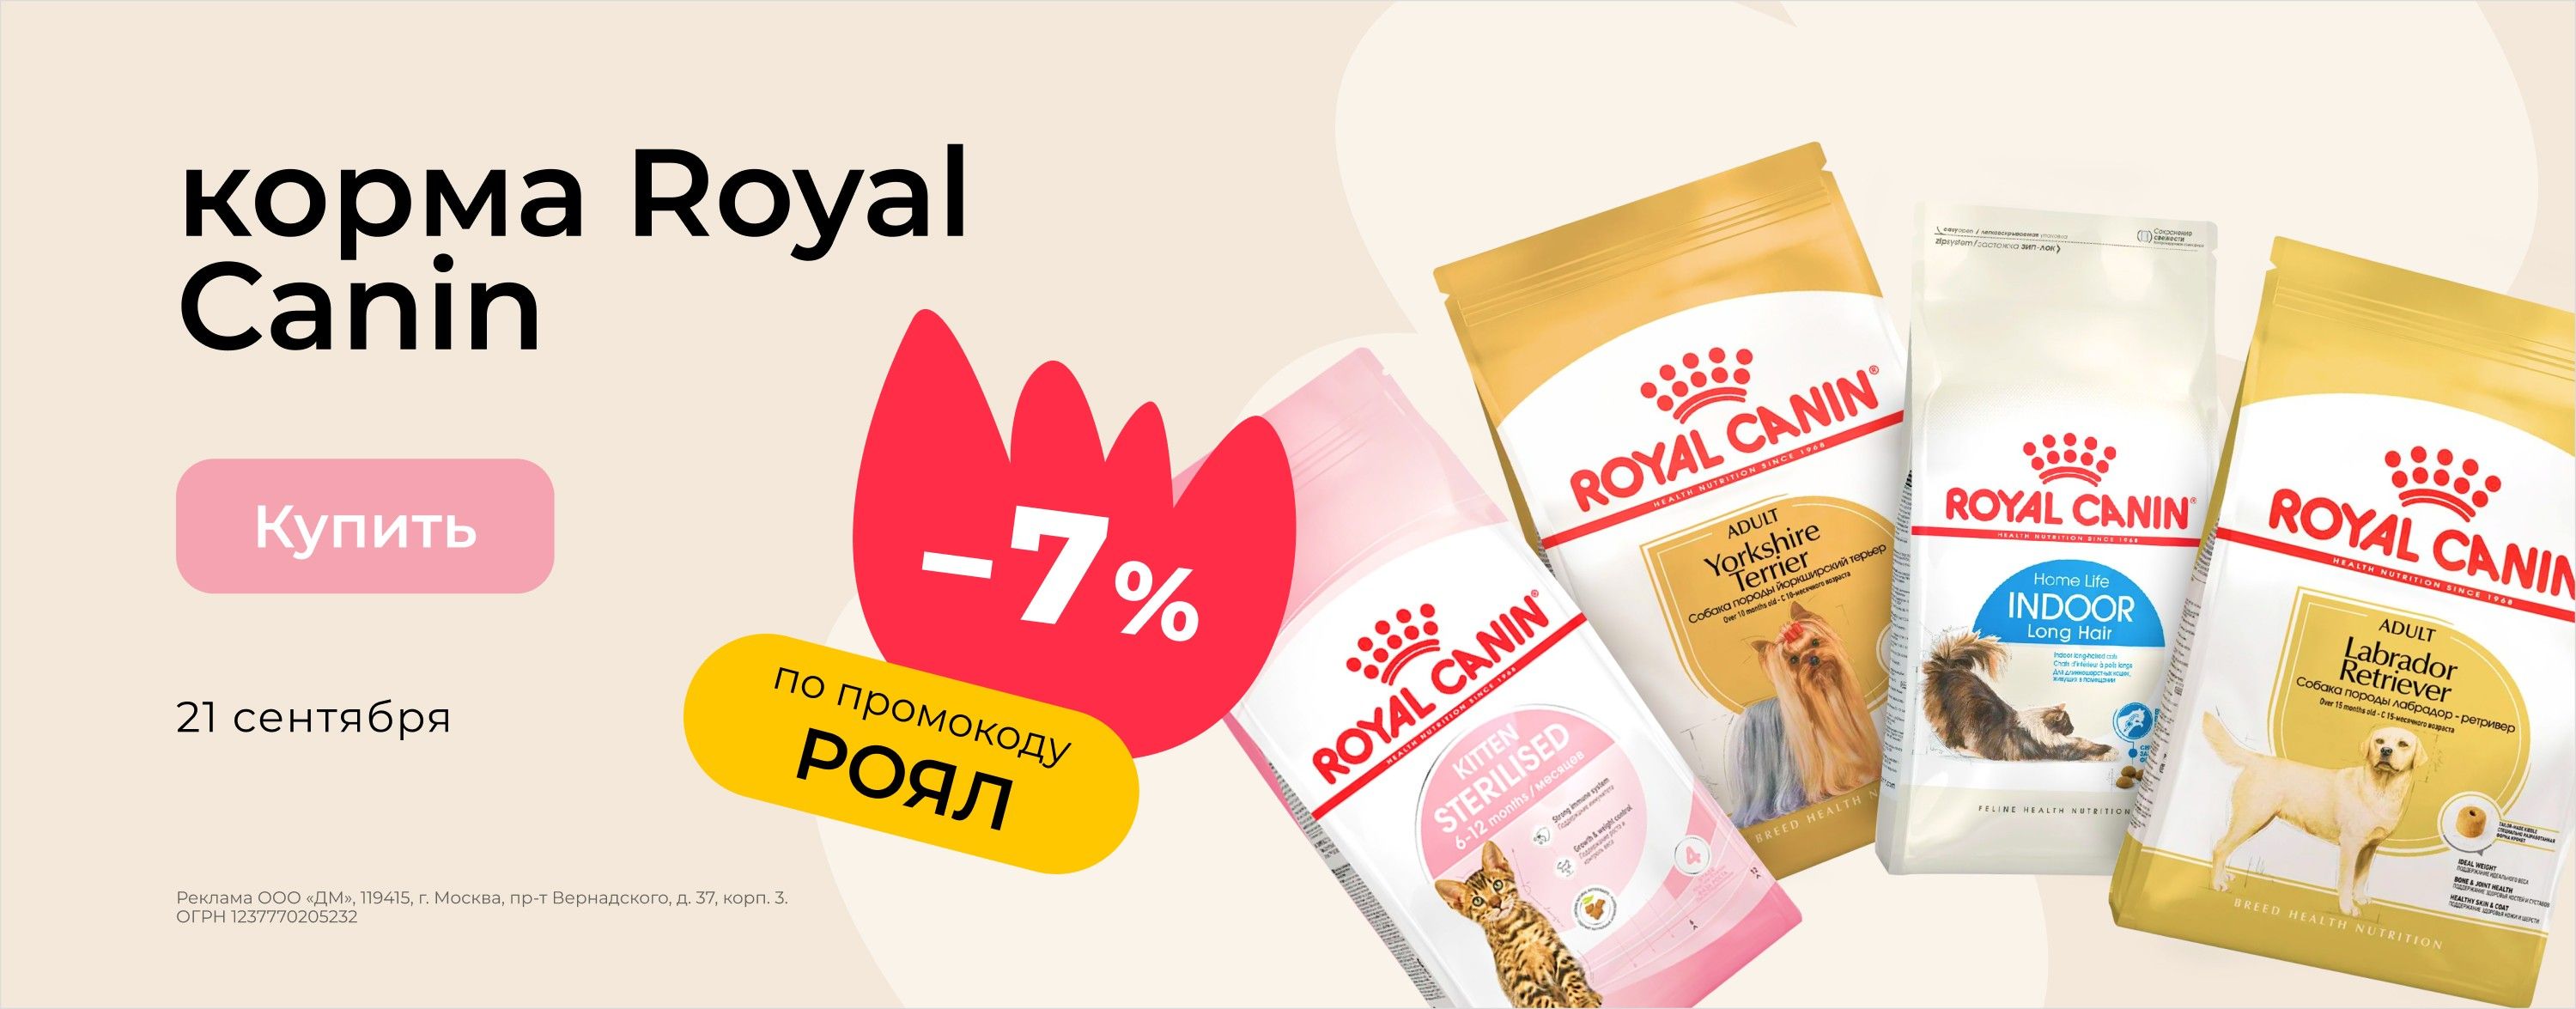 Доп. скидка 7% на корма Royal Canin по промокоду РОЯЛ_зоо